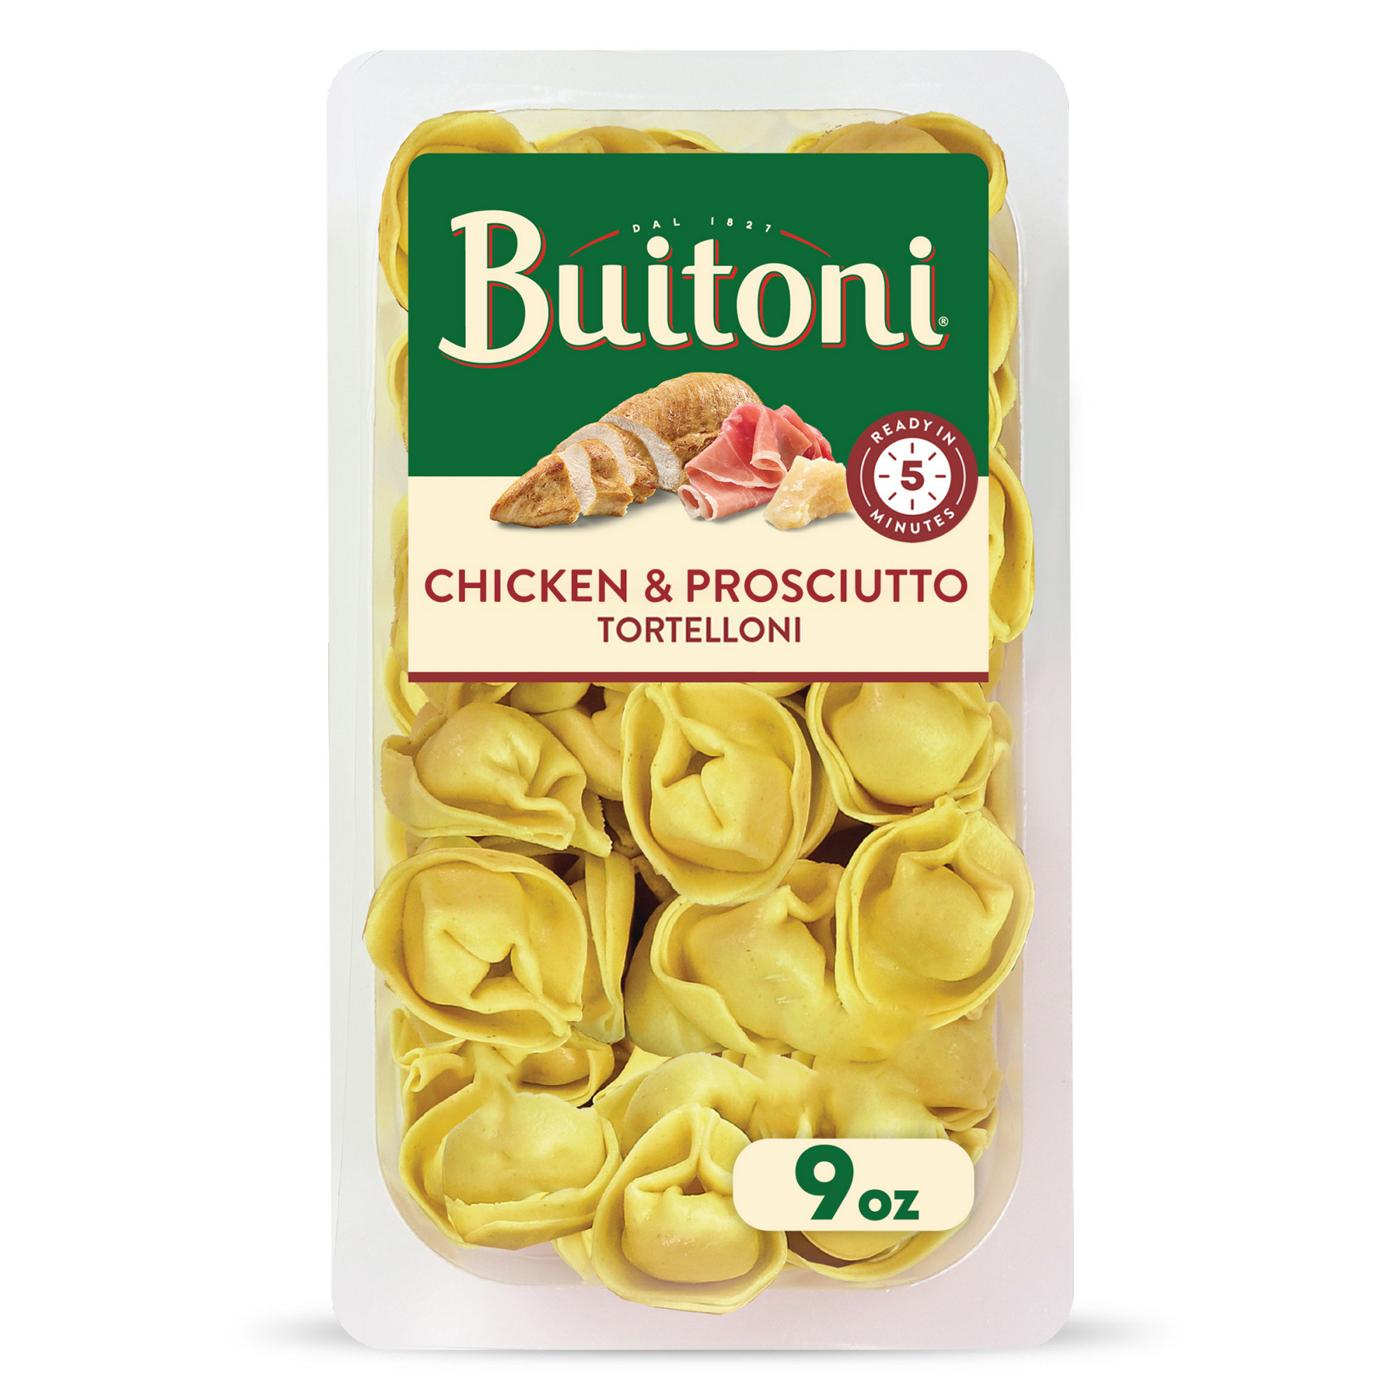 Buitoni Chicken & Prosciutto Tortelloni; image 1 of 2